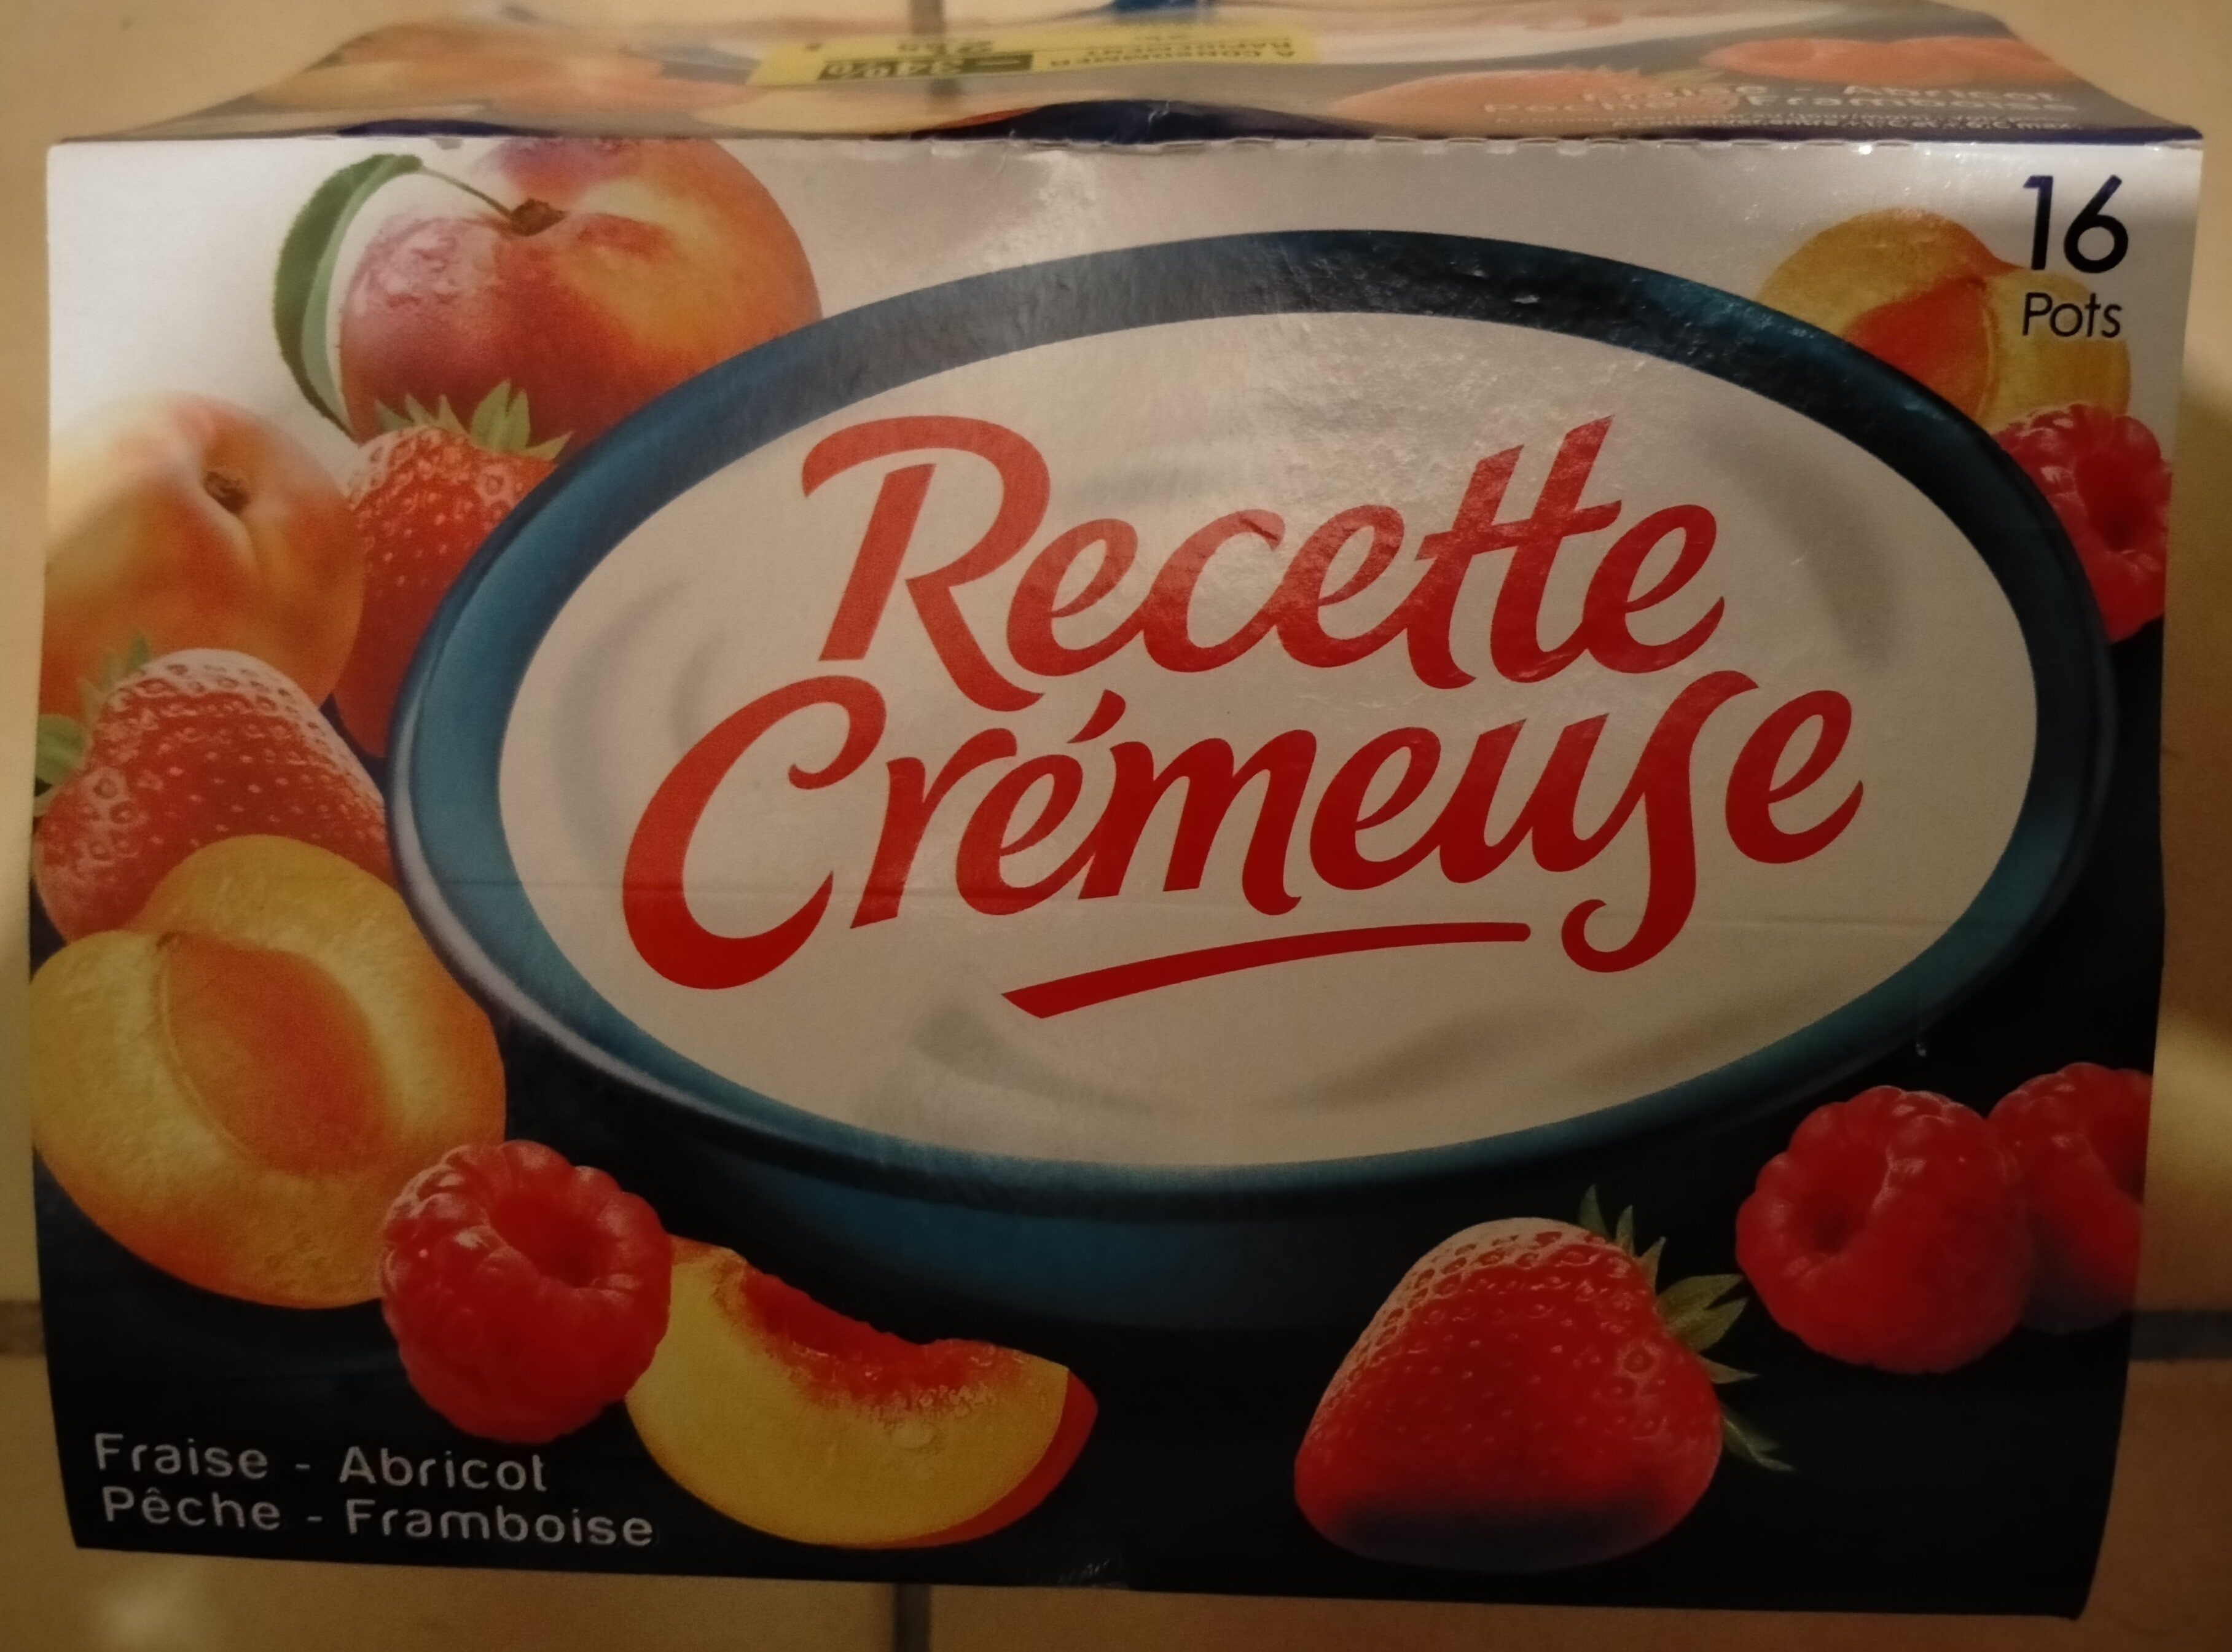 Recette Crémeuse Fraise - Abricot - Pêche - Framboise - Product - fr